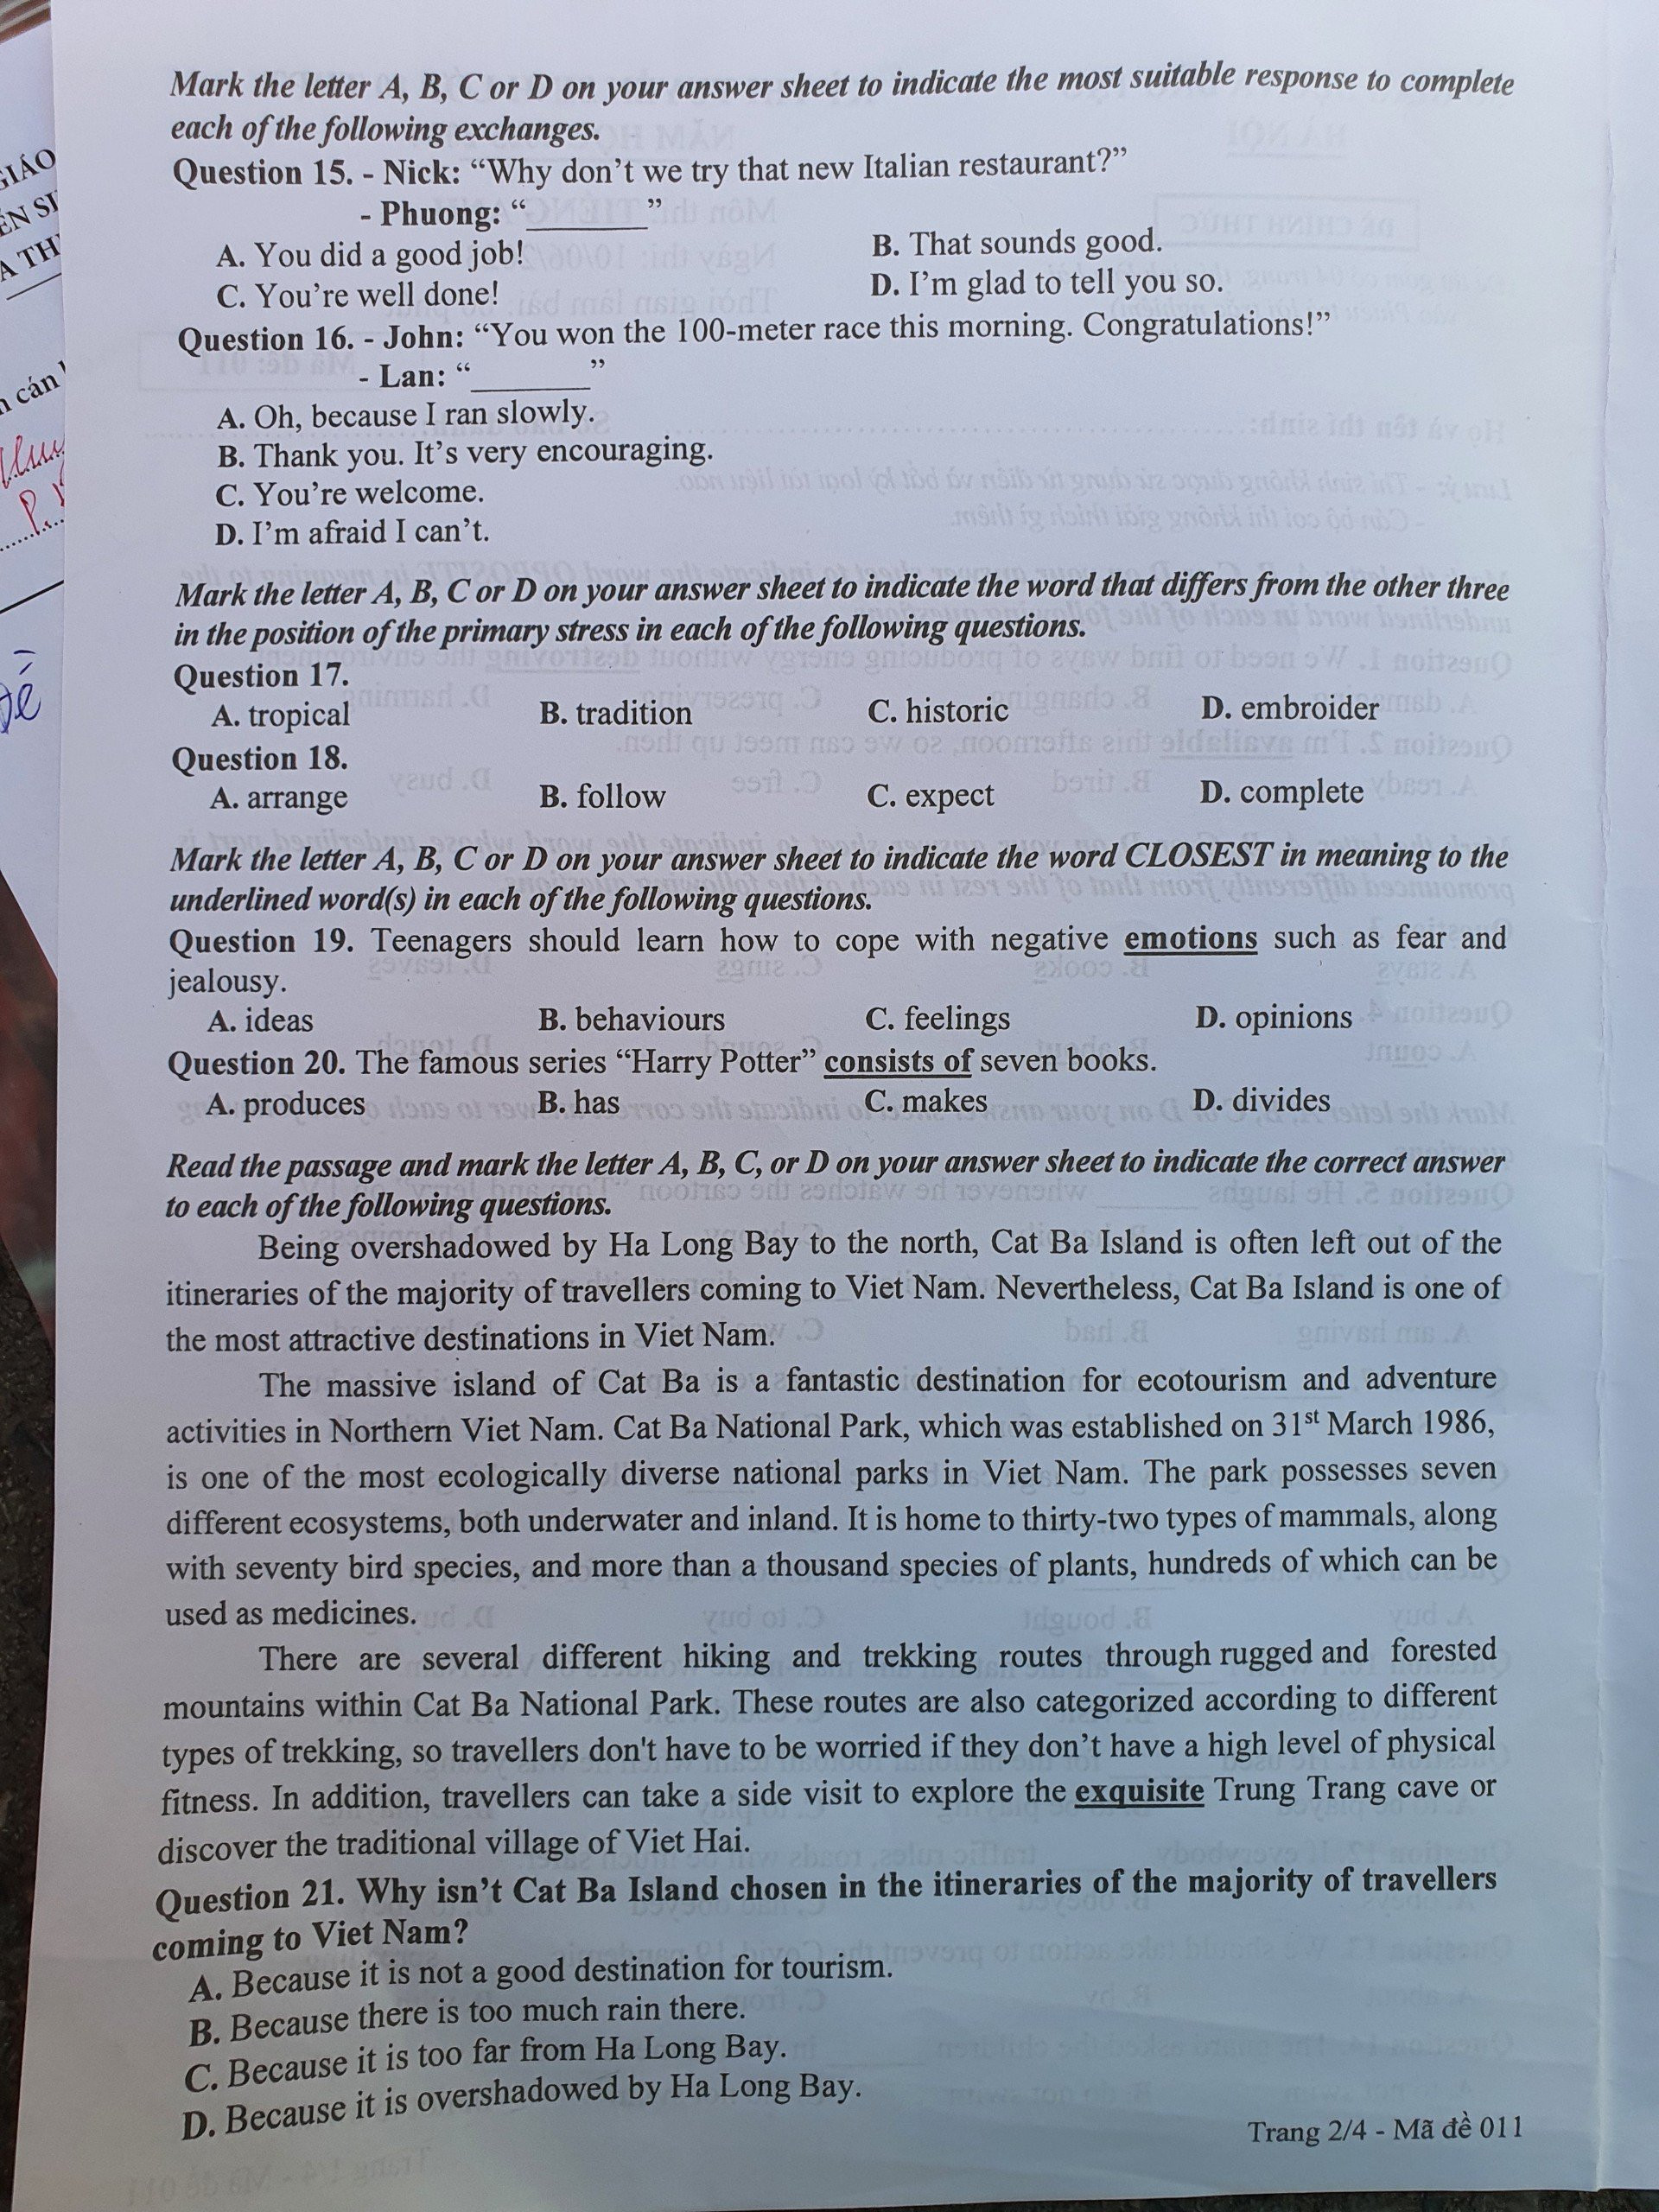 Tuyển sinh - Du học - Cập nhật đề thi, đáp án gợi ý môn Tiếng Anh vào lớp 10 tại Hà Nội chuẩn nhất, chi tiết nhất (Hình 2).